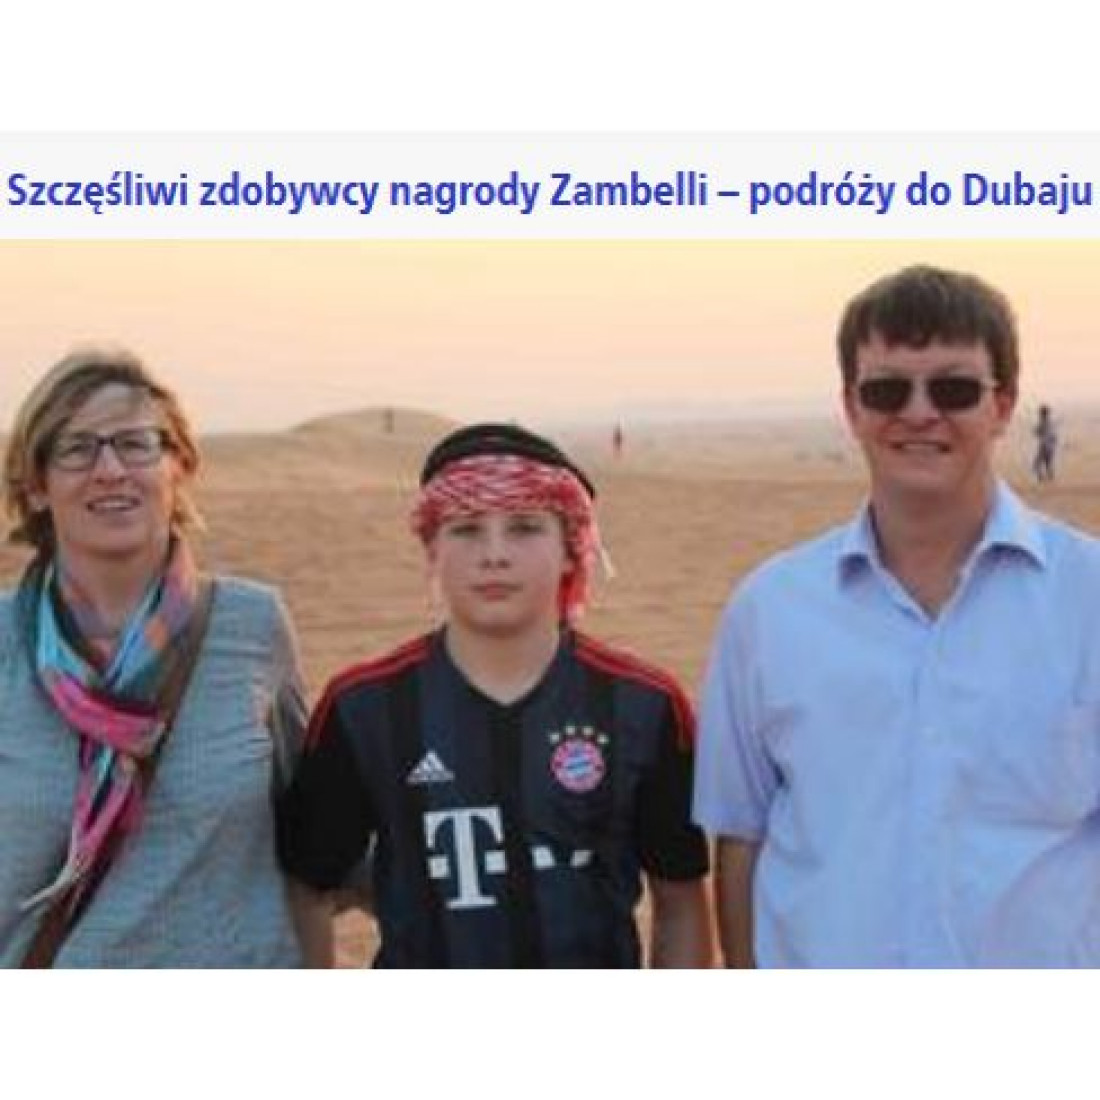 Szczęśliwi zdobywcy nagrody Zambelli - podróży do Dubaju